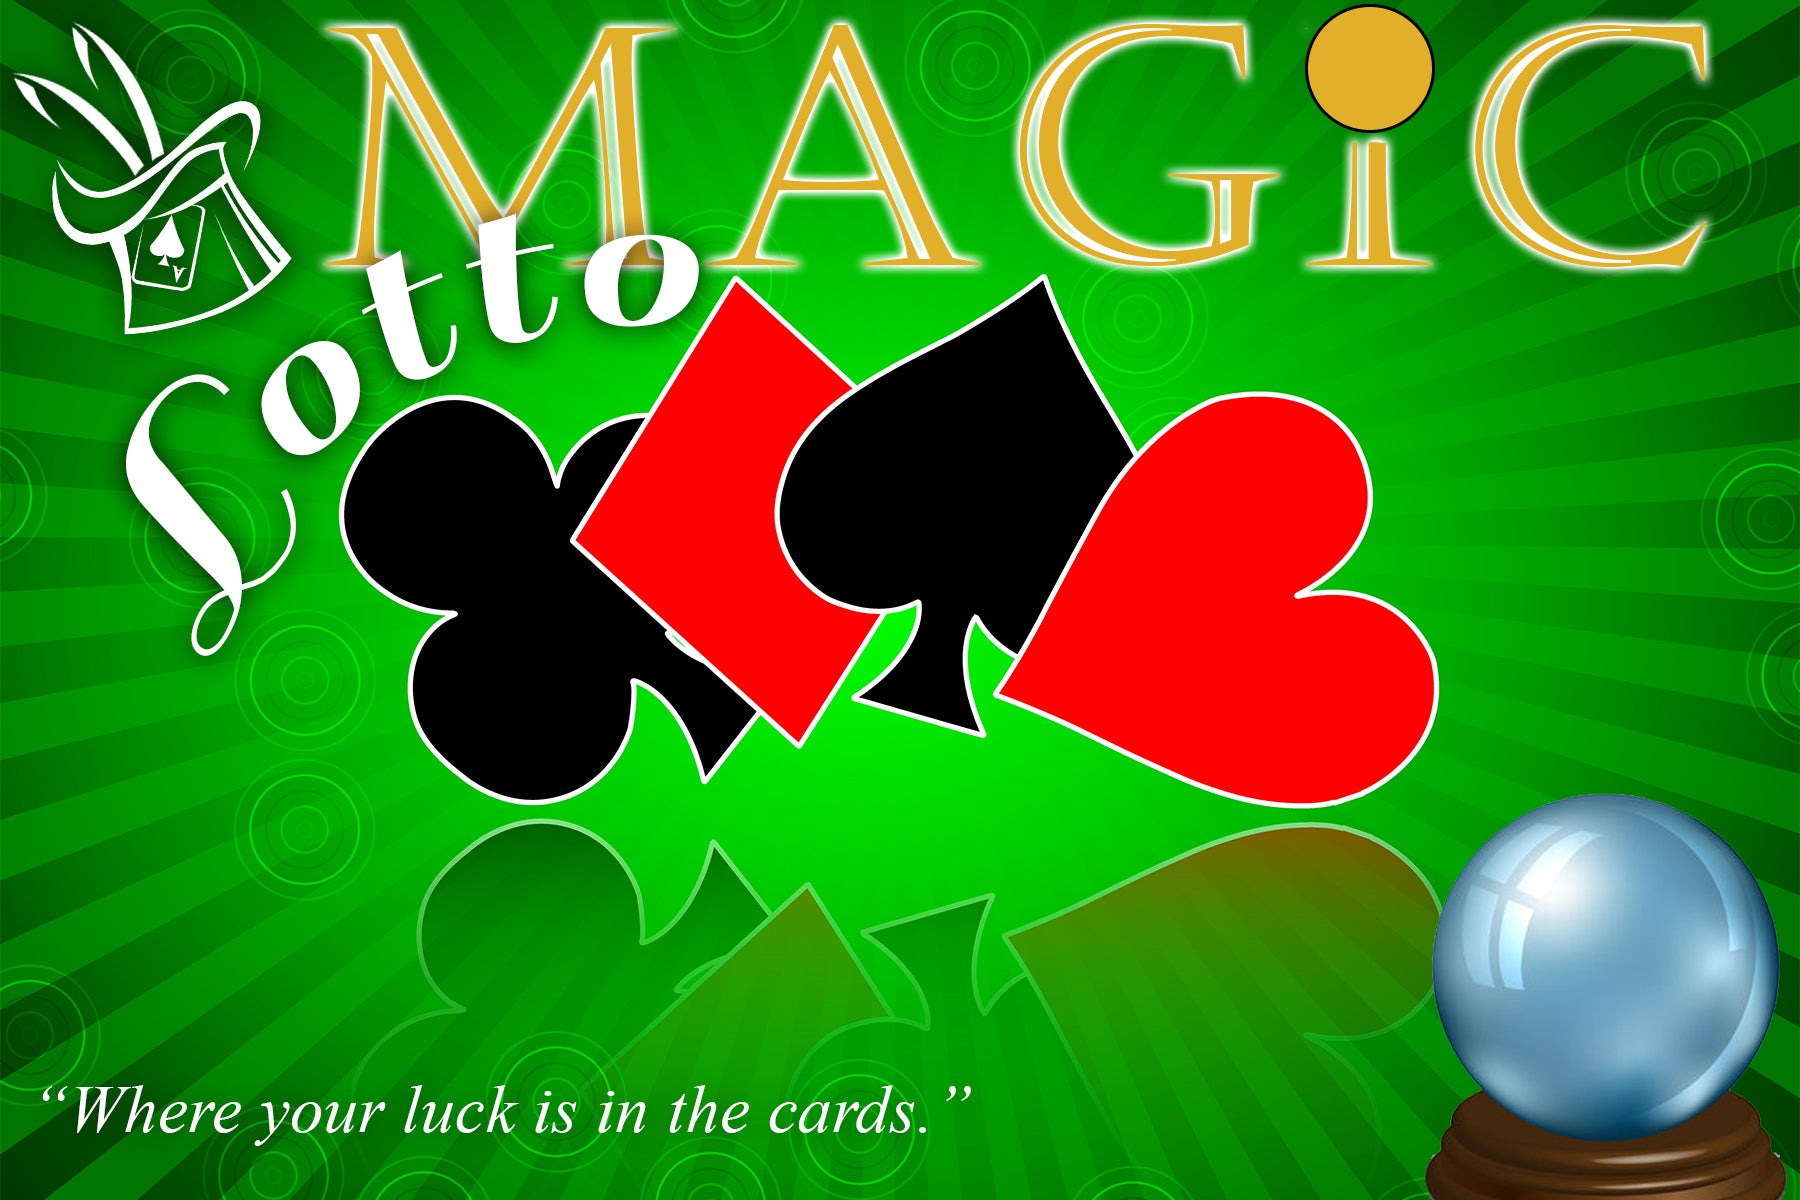 Magic Lotto